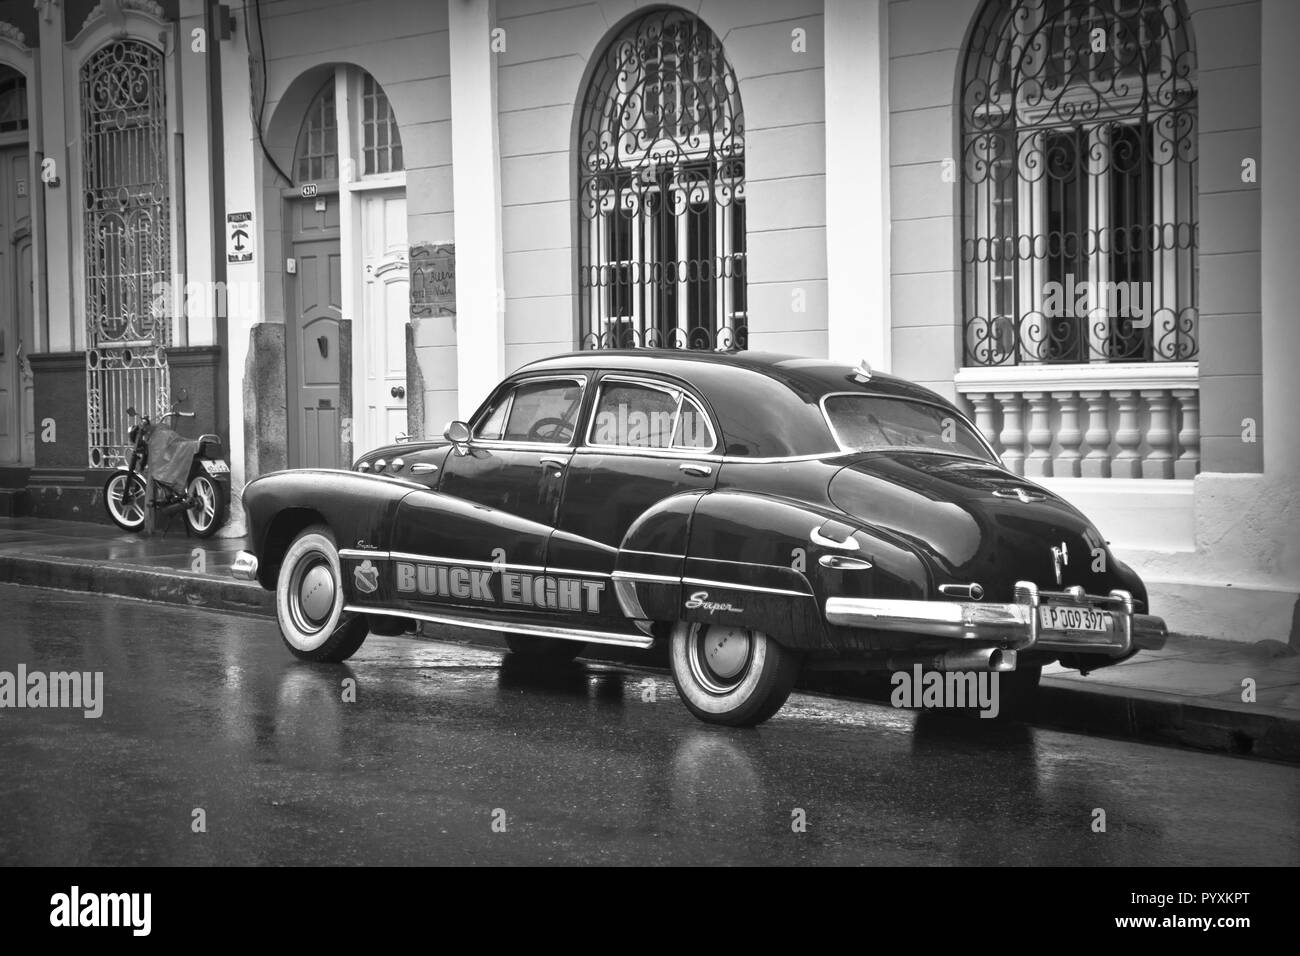 Cuba, La Havane, La Havane, Caraïbes, 'Perle des Antilles' de vieilles voitures, rues et de belles plages. Banque D'Images